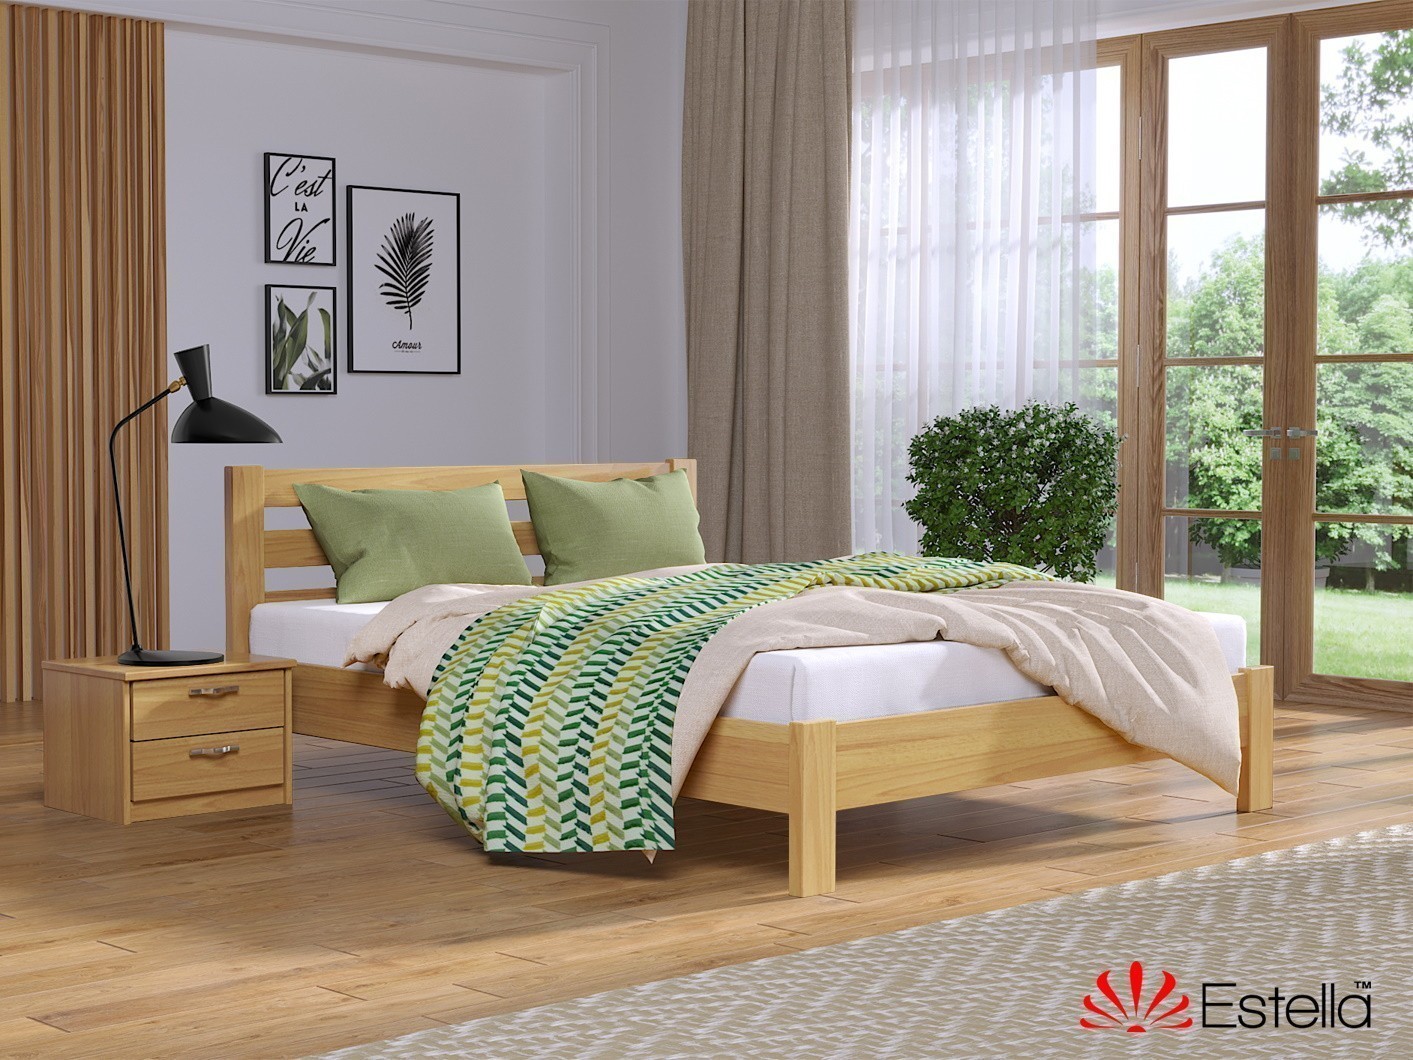 Деревянная кровать Рената Люкс в массиве 160х200